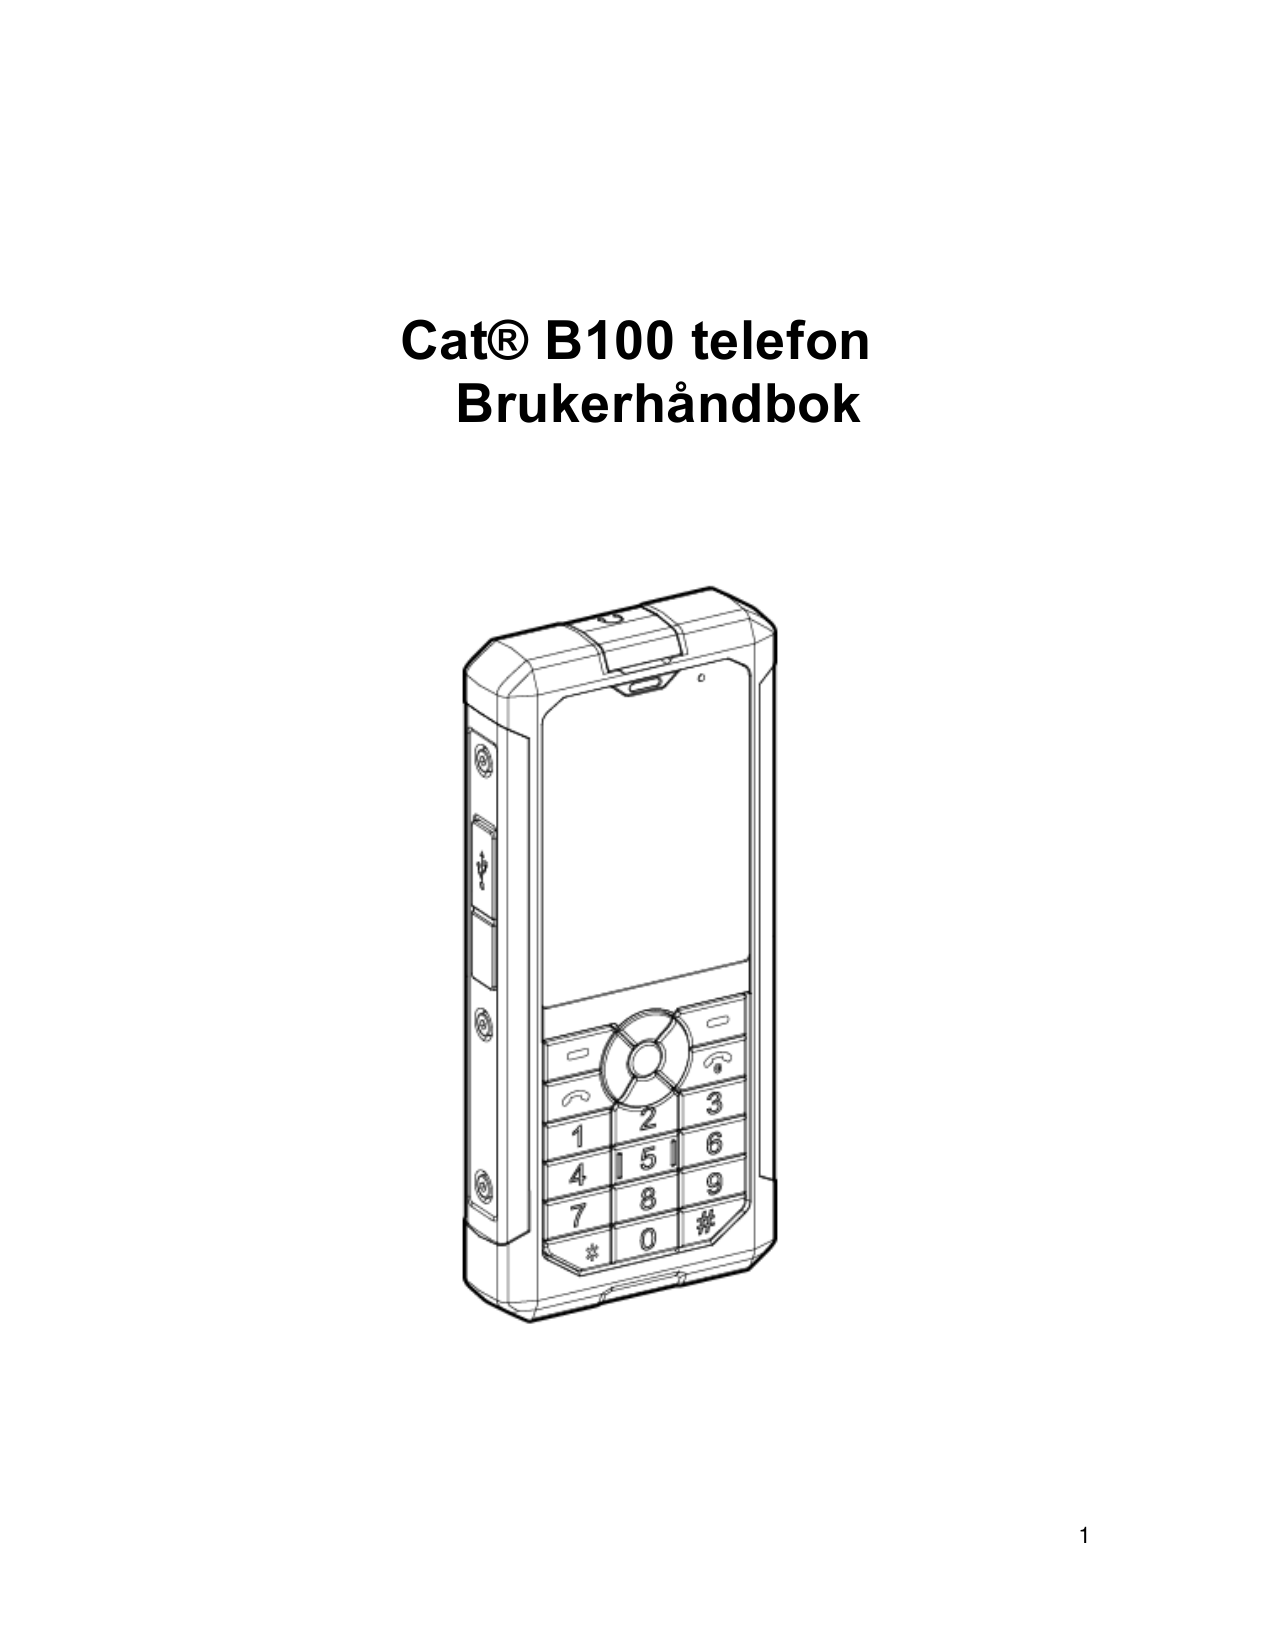 Cat® B100 telefonBrukerhåndbok1